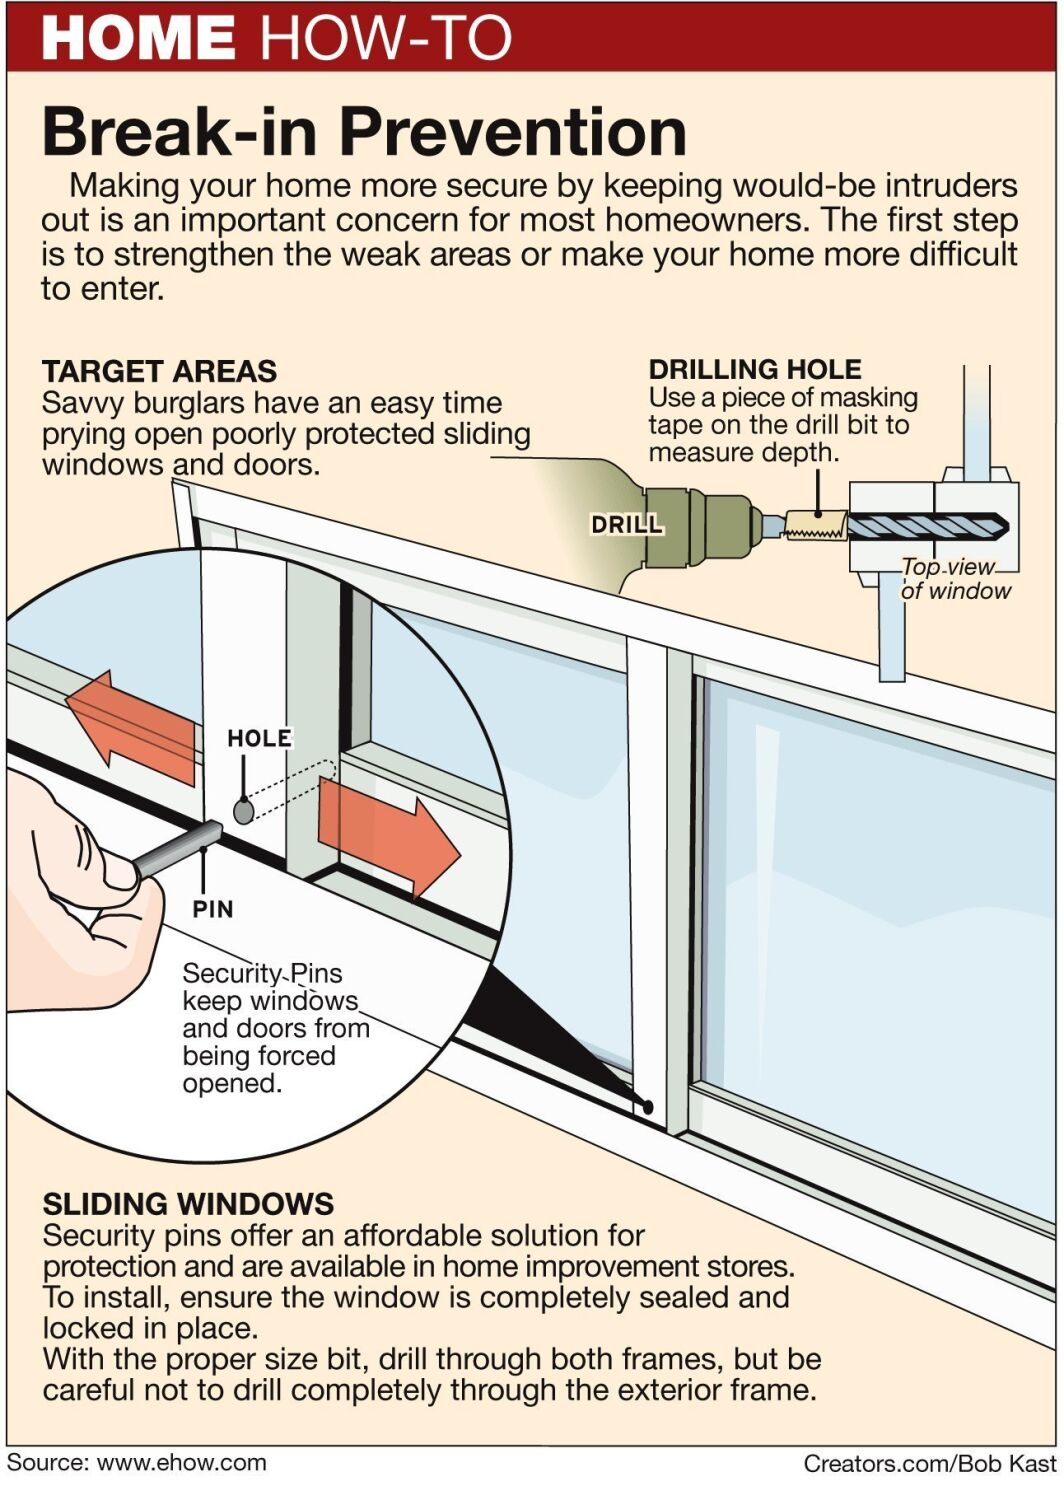 ¿Cómo hago las ventanas y puertas seguras?